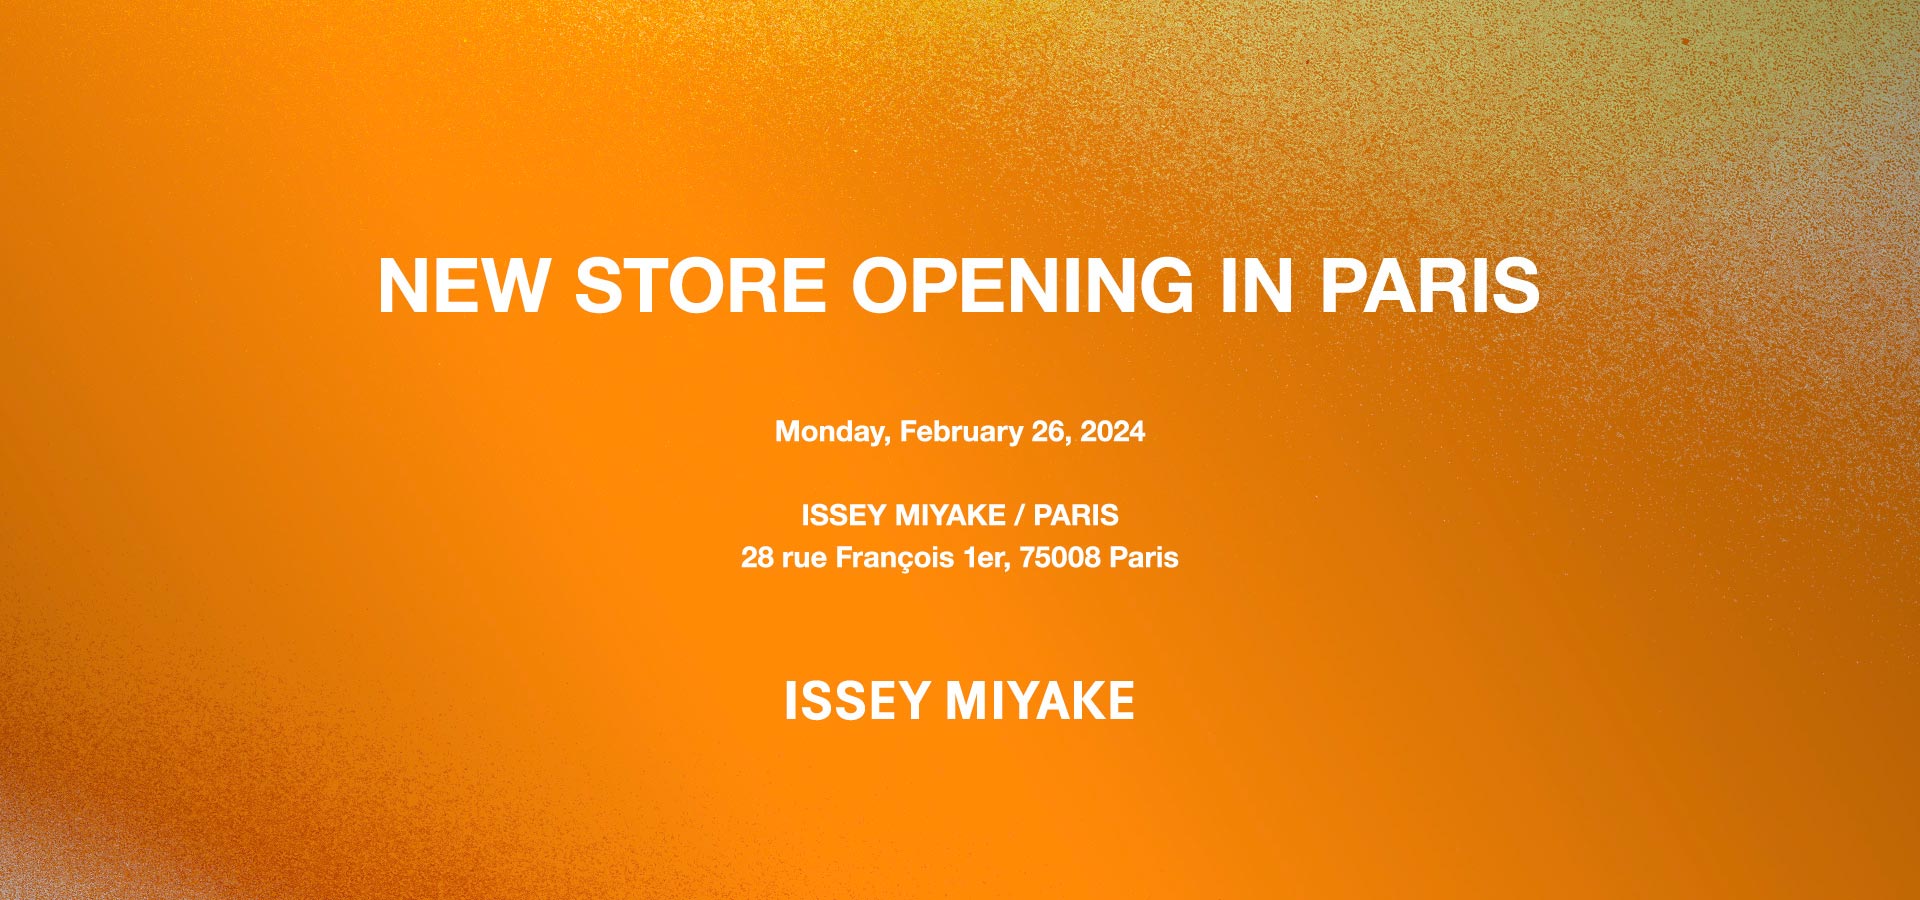 ISSEY MIYAKE / PARIS